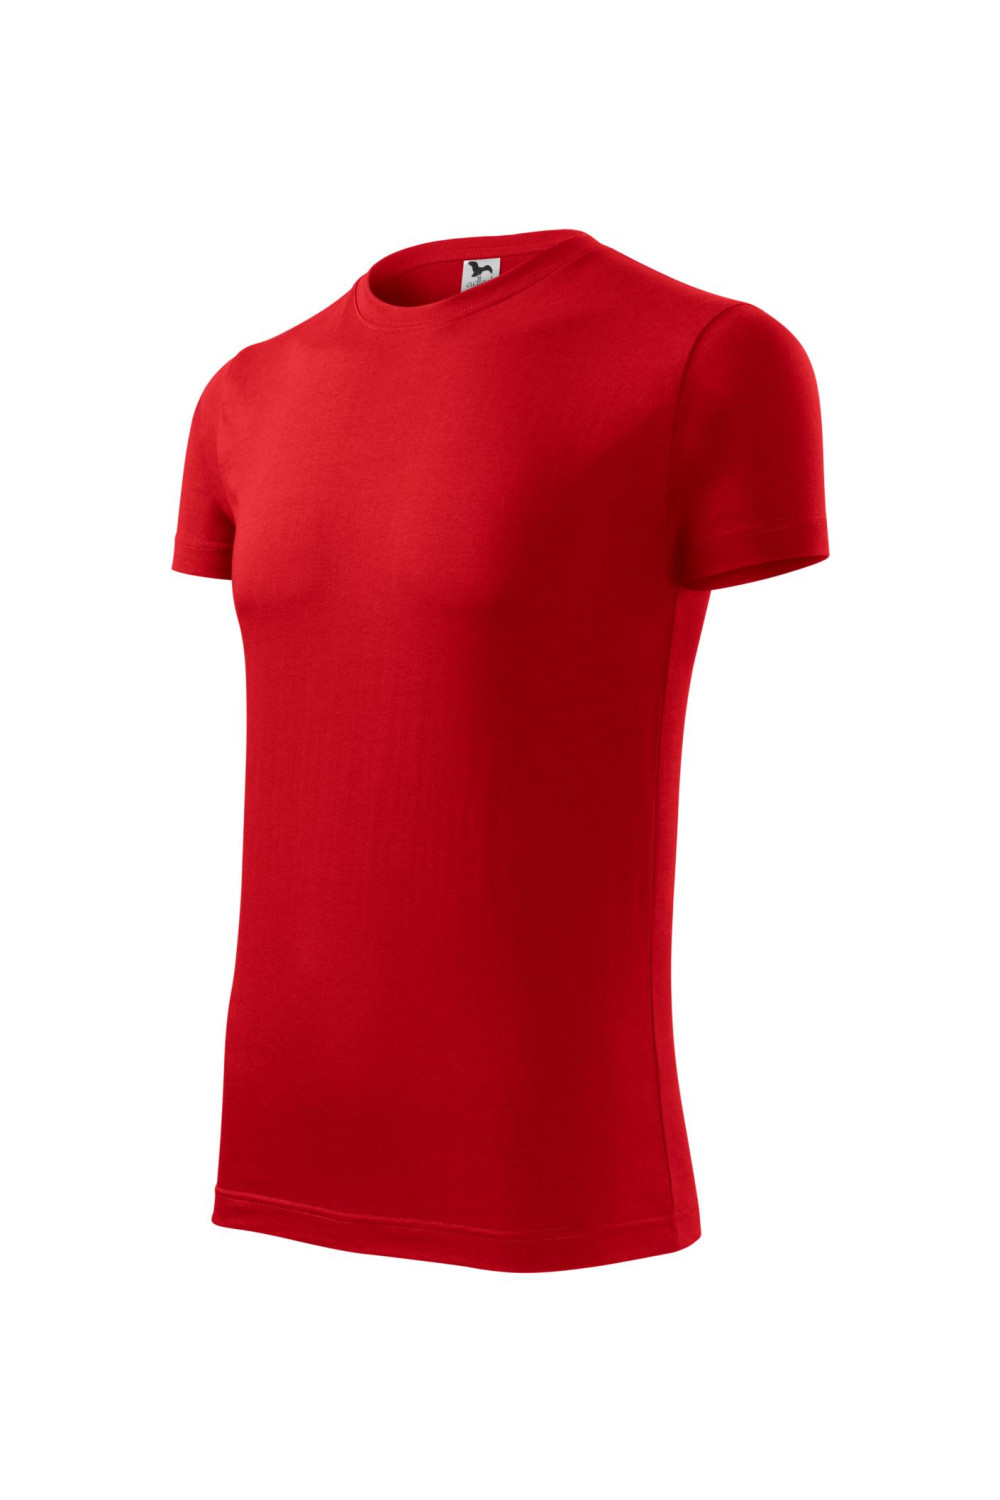 REPLAY 143 MALFINI ADLER Koszulka męska 100% bawełna czerwony